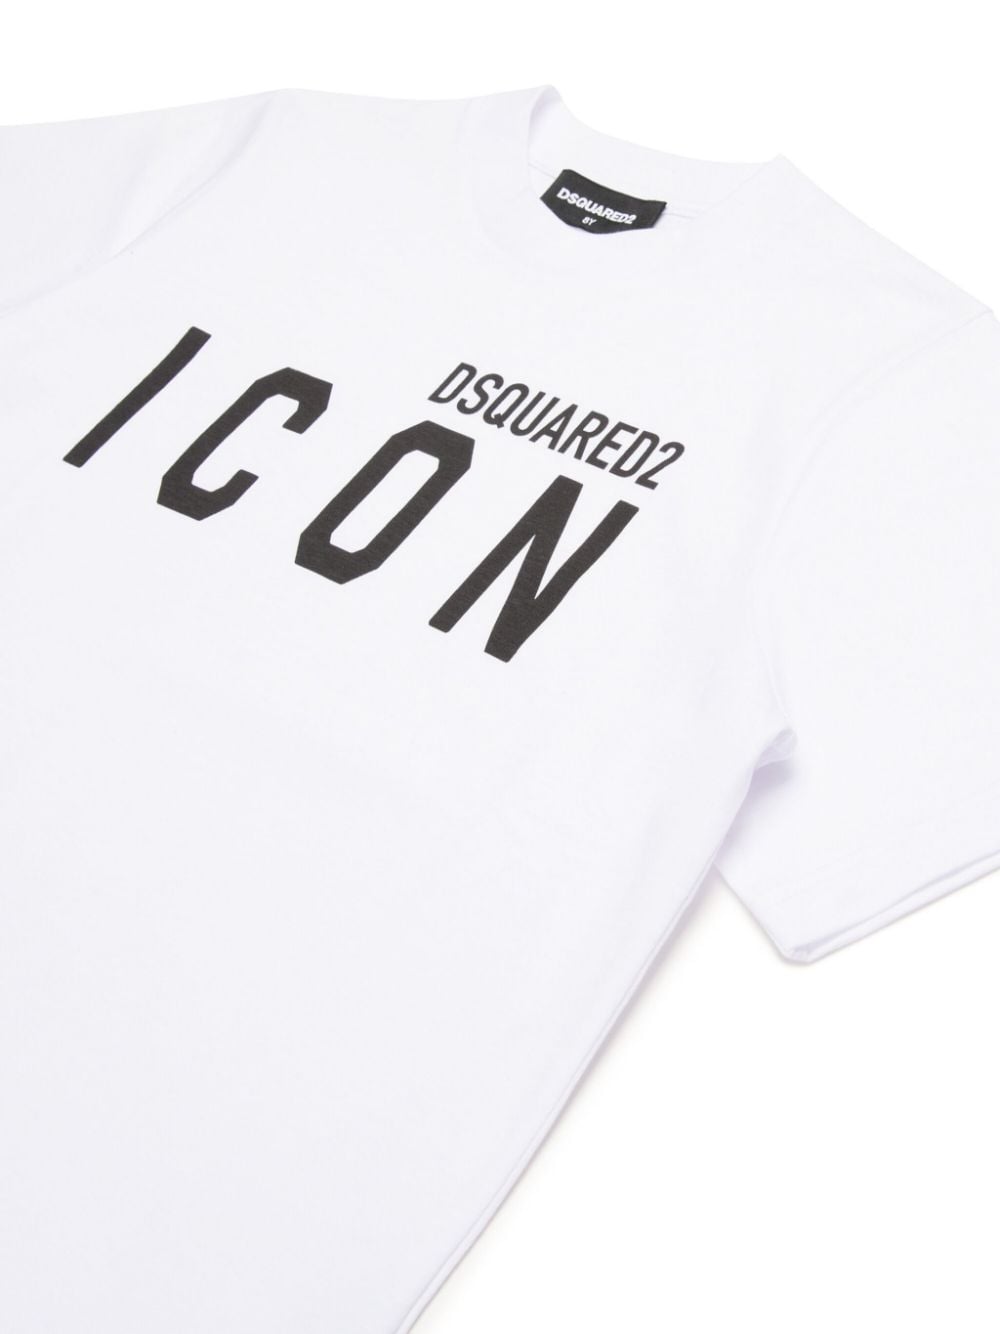 T-shirt per bambino in cotone nera con stampa ICON